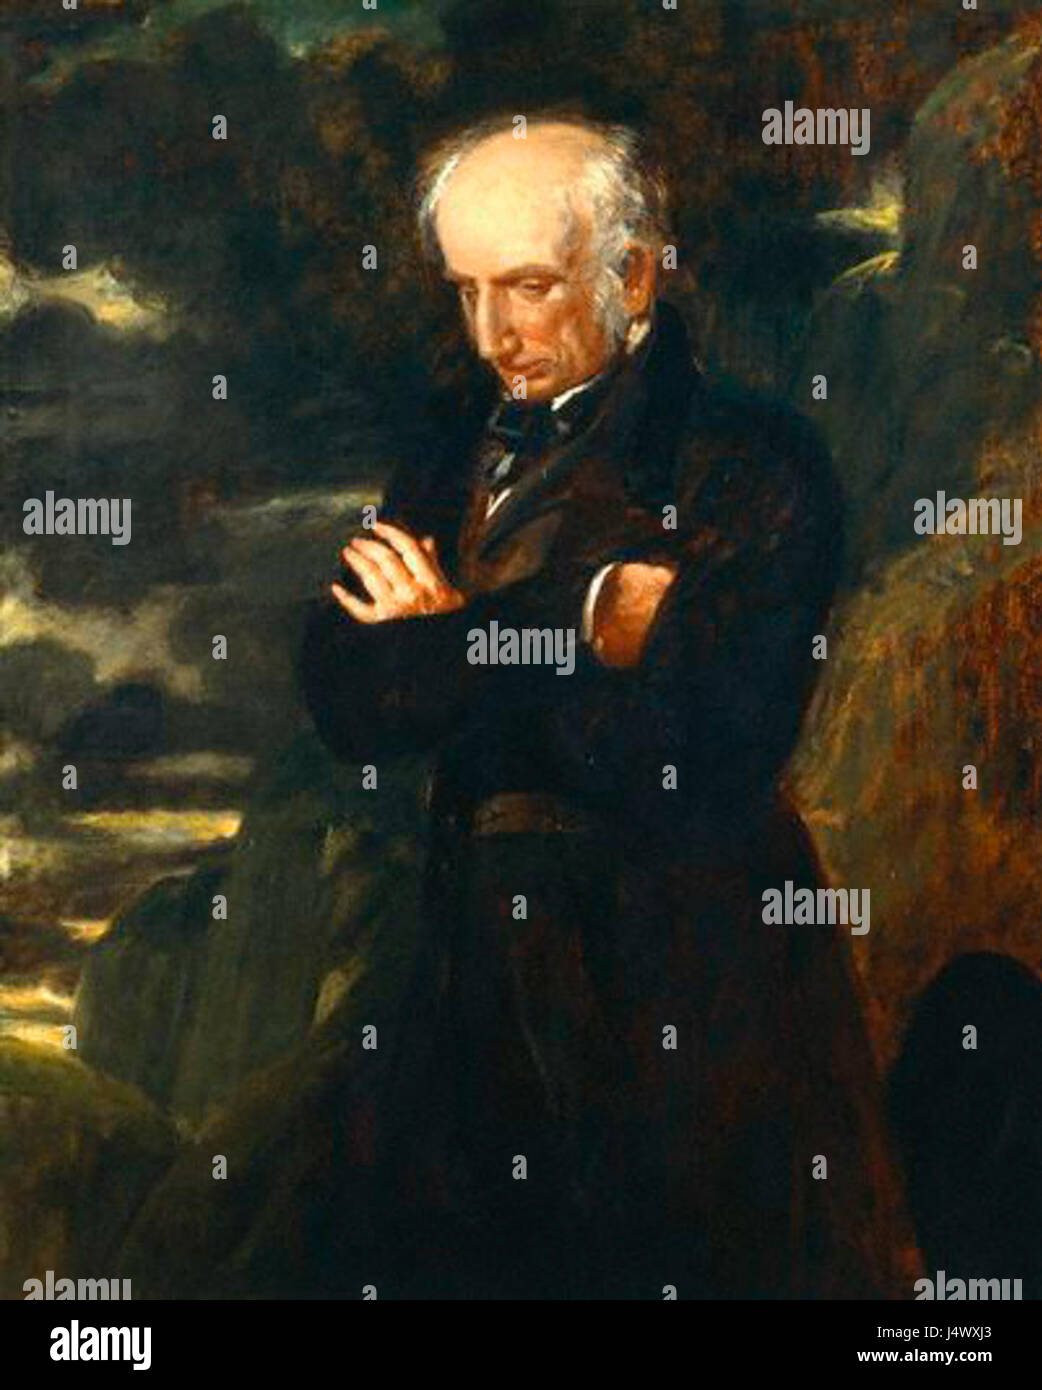 William Wordsworth 001 Stock Photo